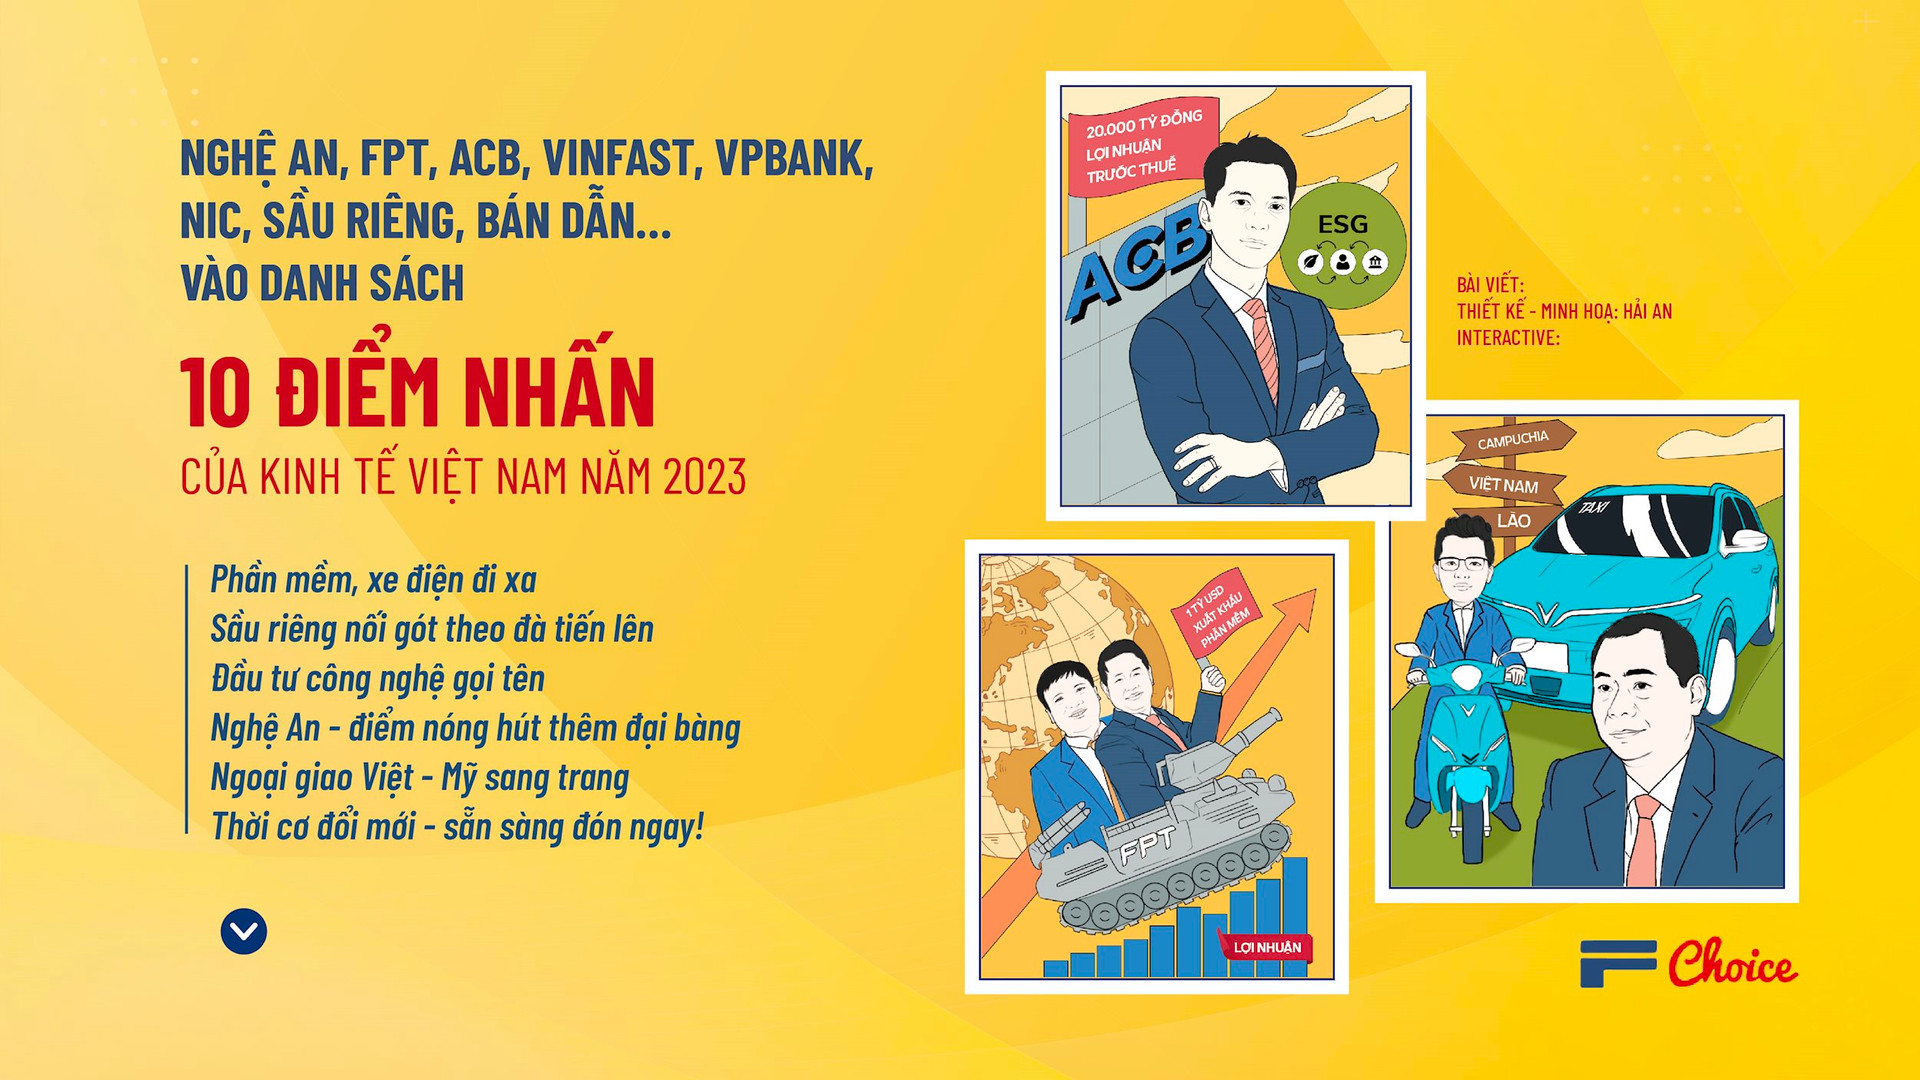 Nghệ An, FPT, ACB, VinFast, VPBank, NIC, sầu riêng, bán dẫn… vào danh sách 10 điểm nhấn của kinh tế Việt Nam năm 2023 - Ảnh 2.